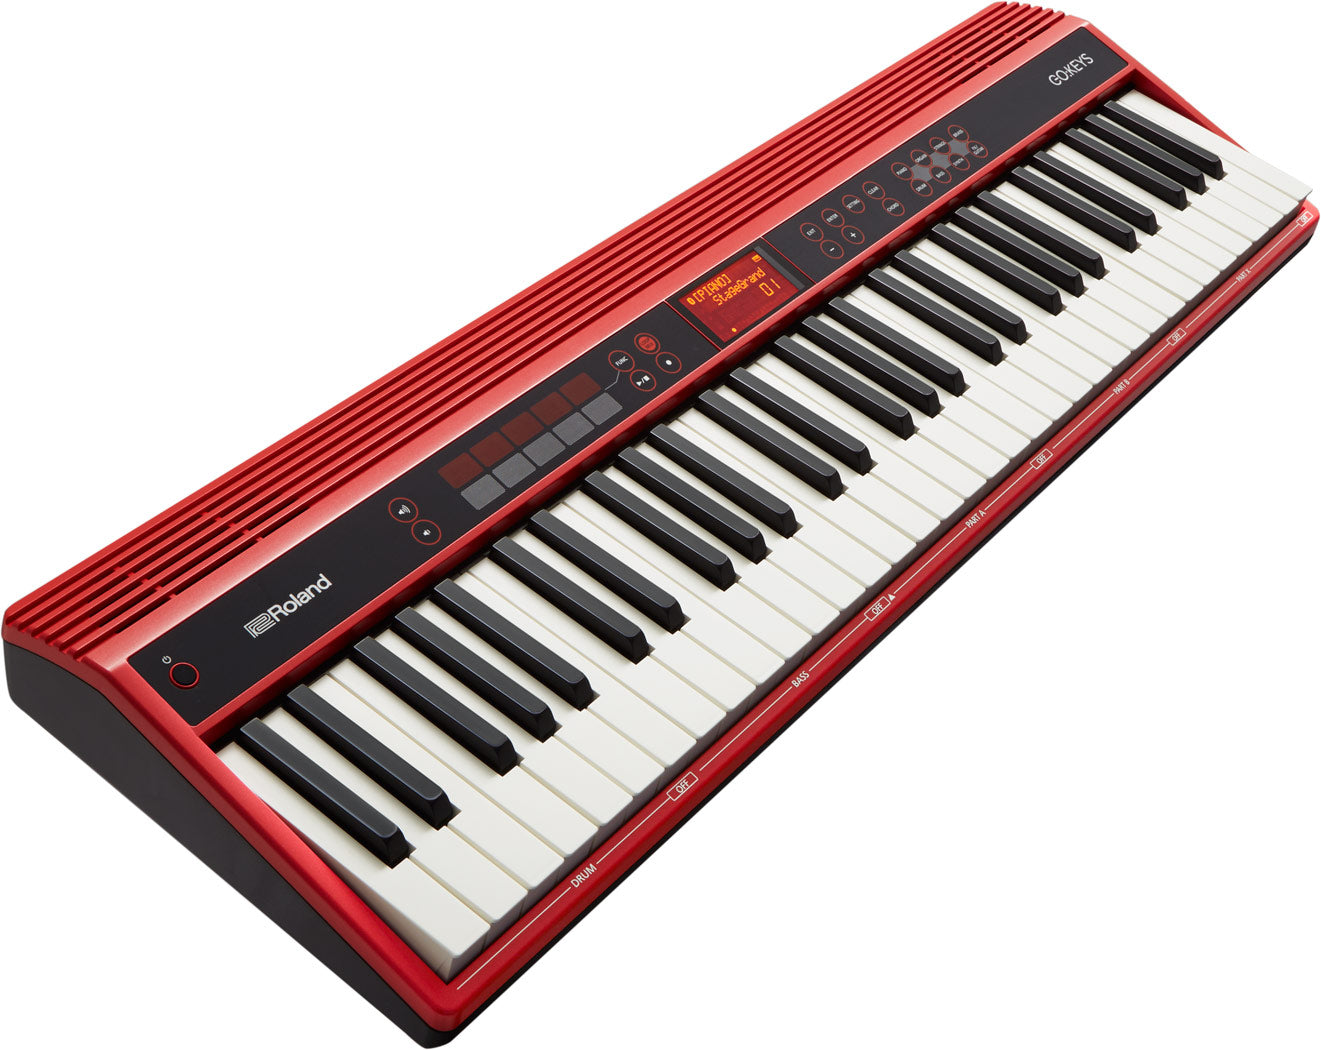 Roland GO:KEYS 數碼鍵琴 (GO-61K)